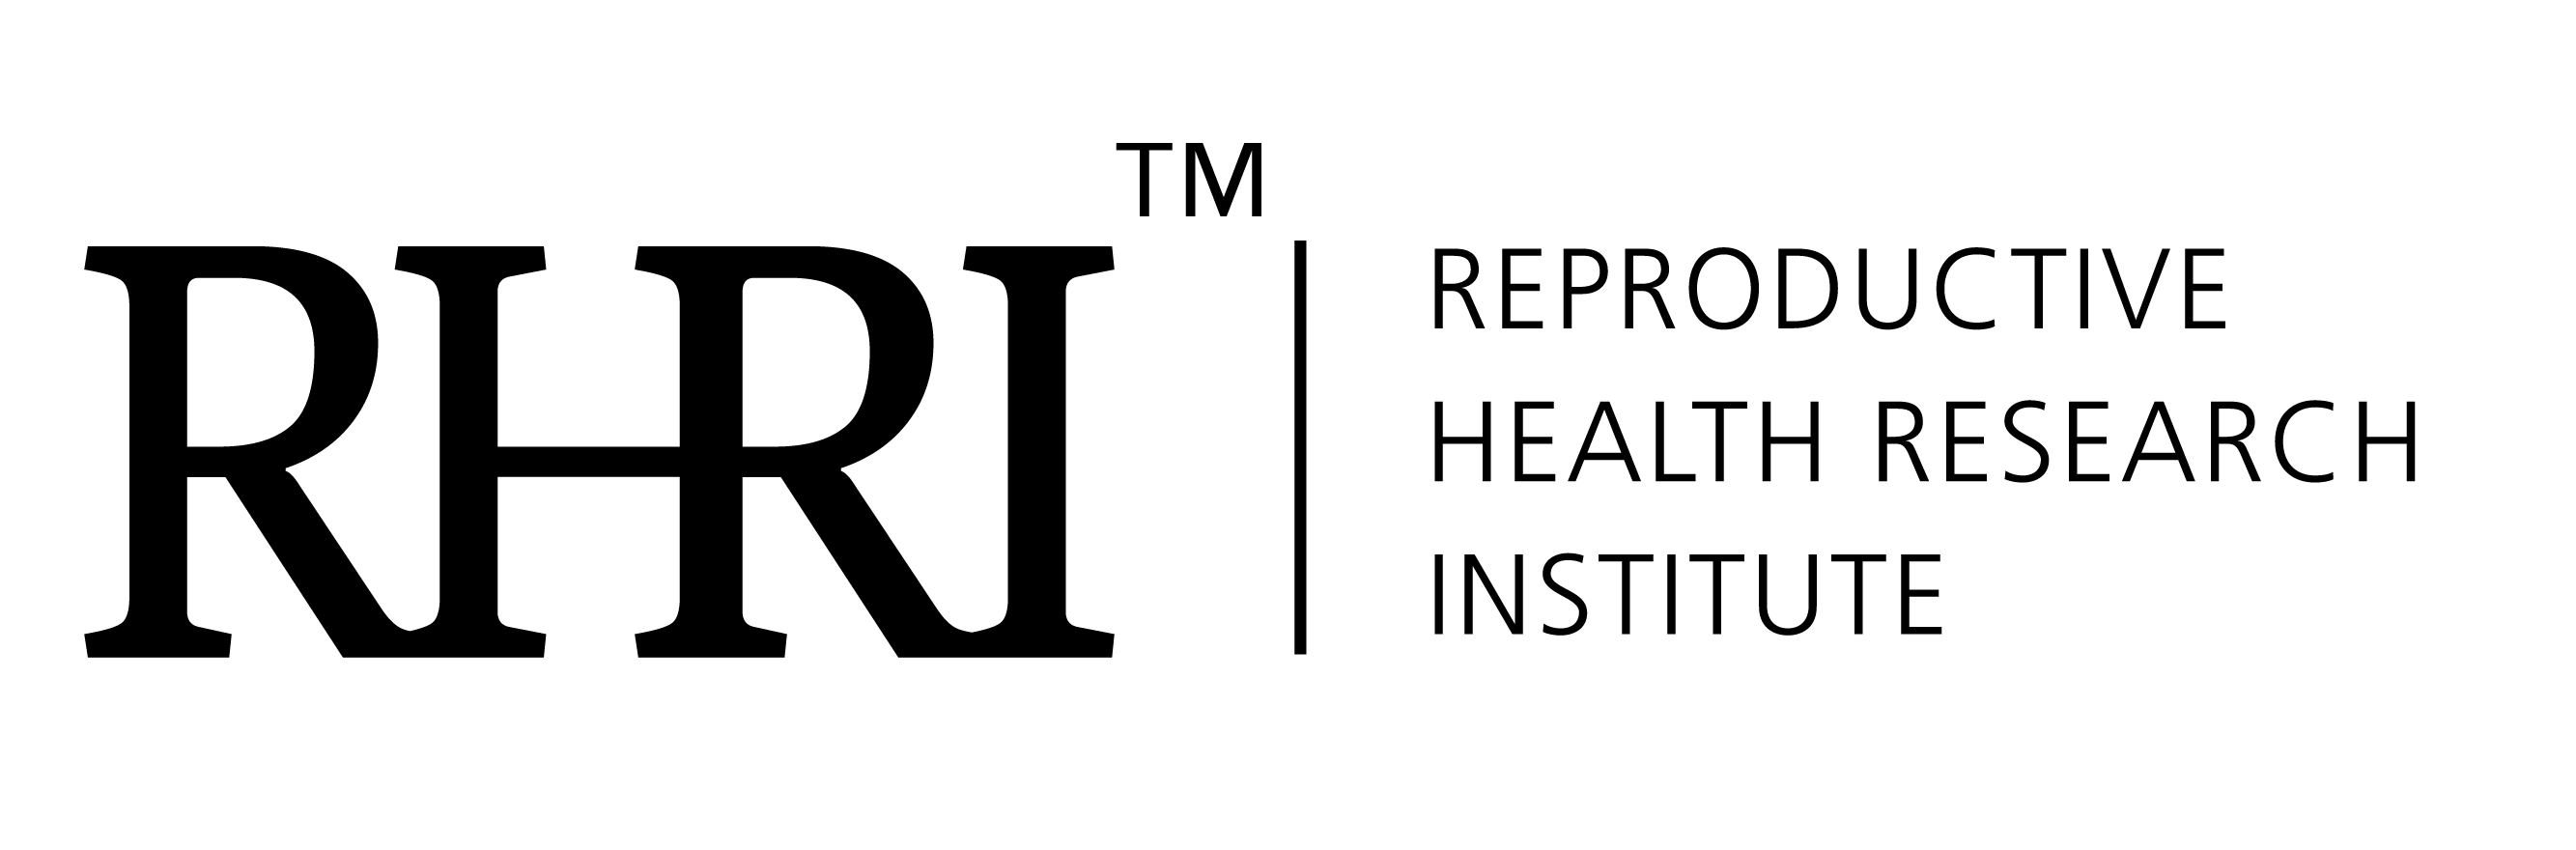 2.- Logo RHRI TM